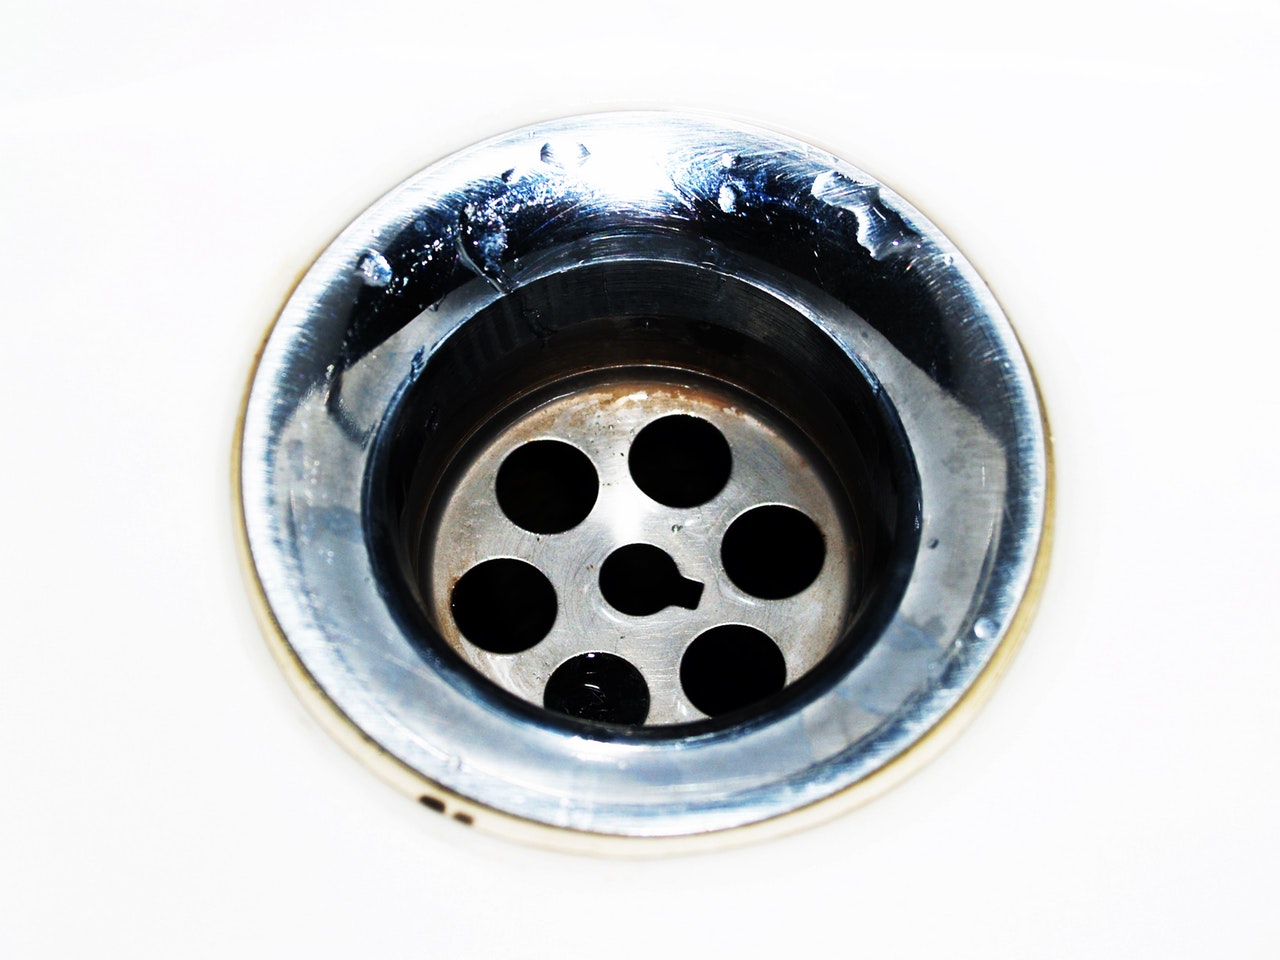 https://www.michaelsplumbingorlando.com/wp-content/uploads/2019/11/how-to-unclog-a-sink-drain.jpg